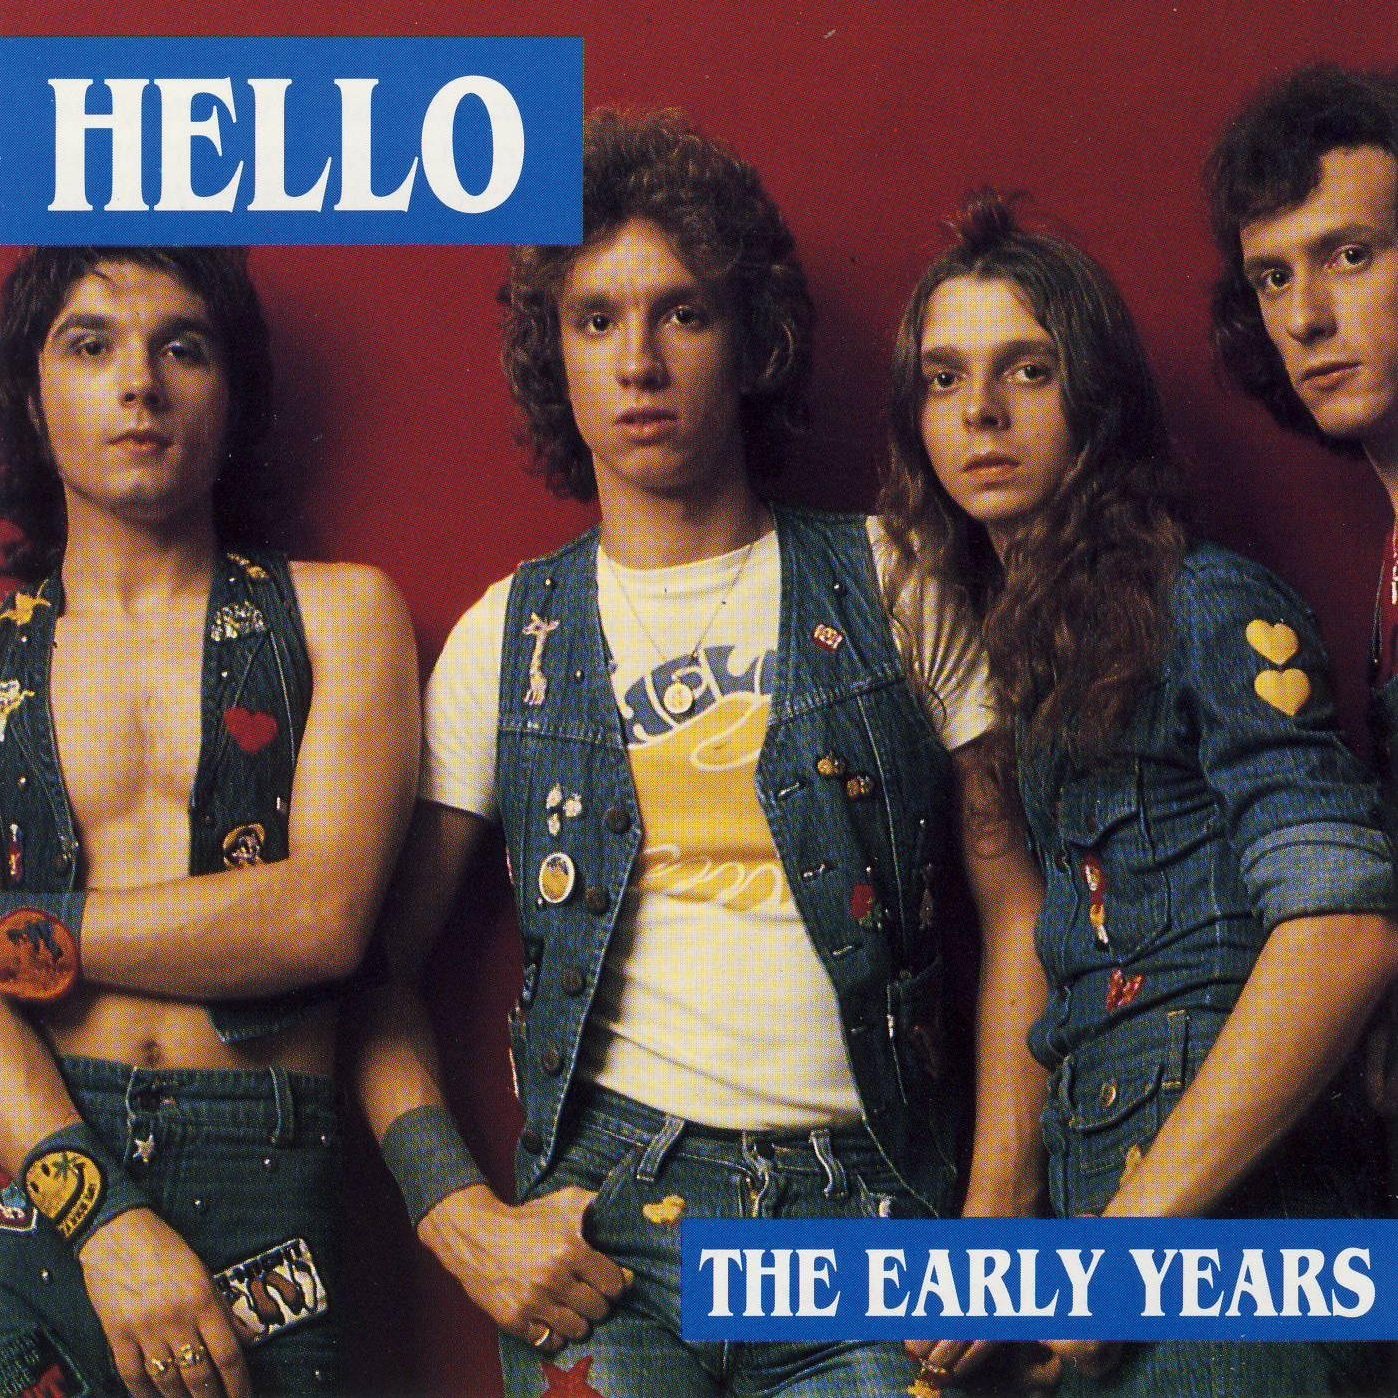 Группа hello. Hello группа. Британская группа Хеллоу. Hello группа из Англии. Группа hello 1976г.